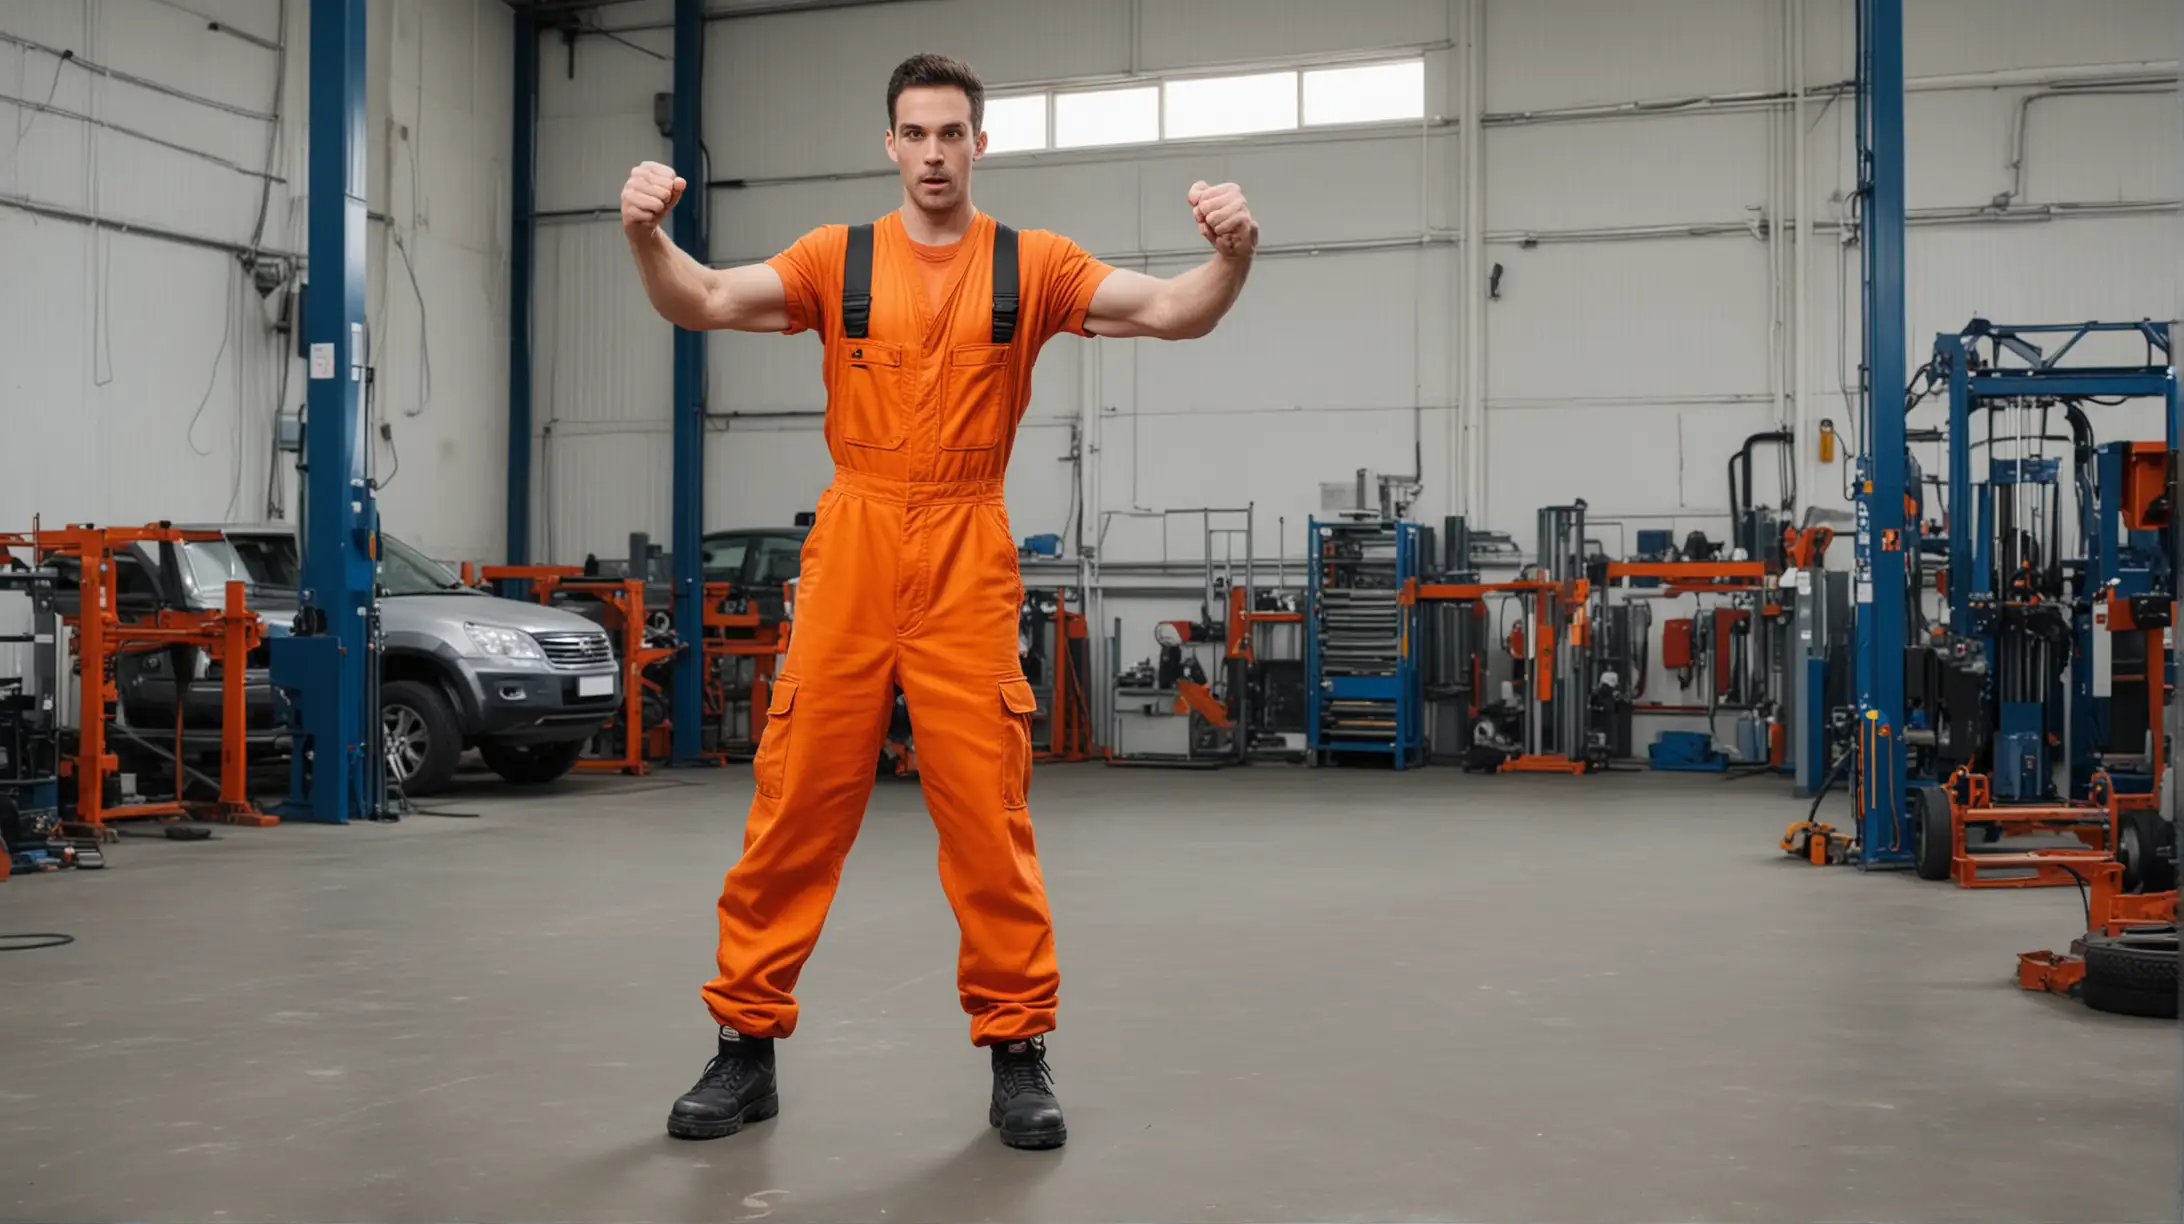 tanzender Mechaniker mit Stoßdämpfer, oranger Overall, ganze Person Frontalfoto in Autowerkstatt vor leerer Hebebühne